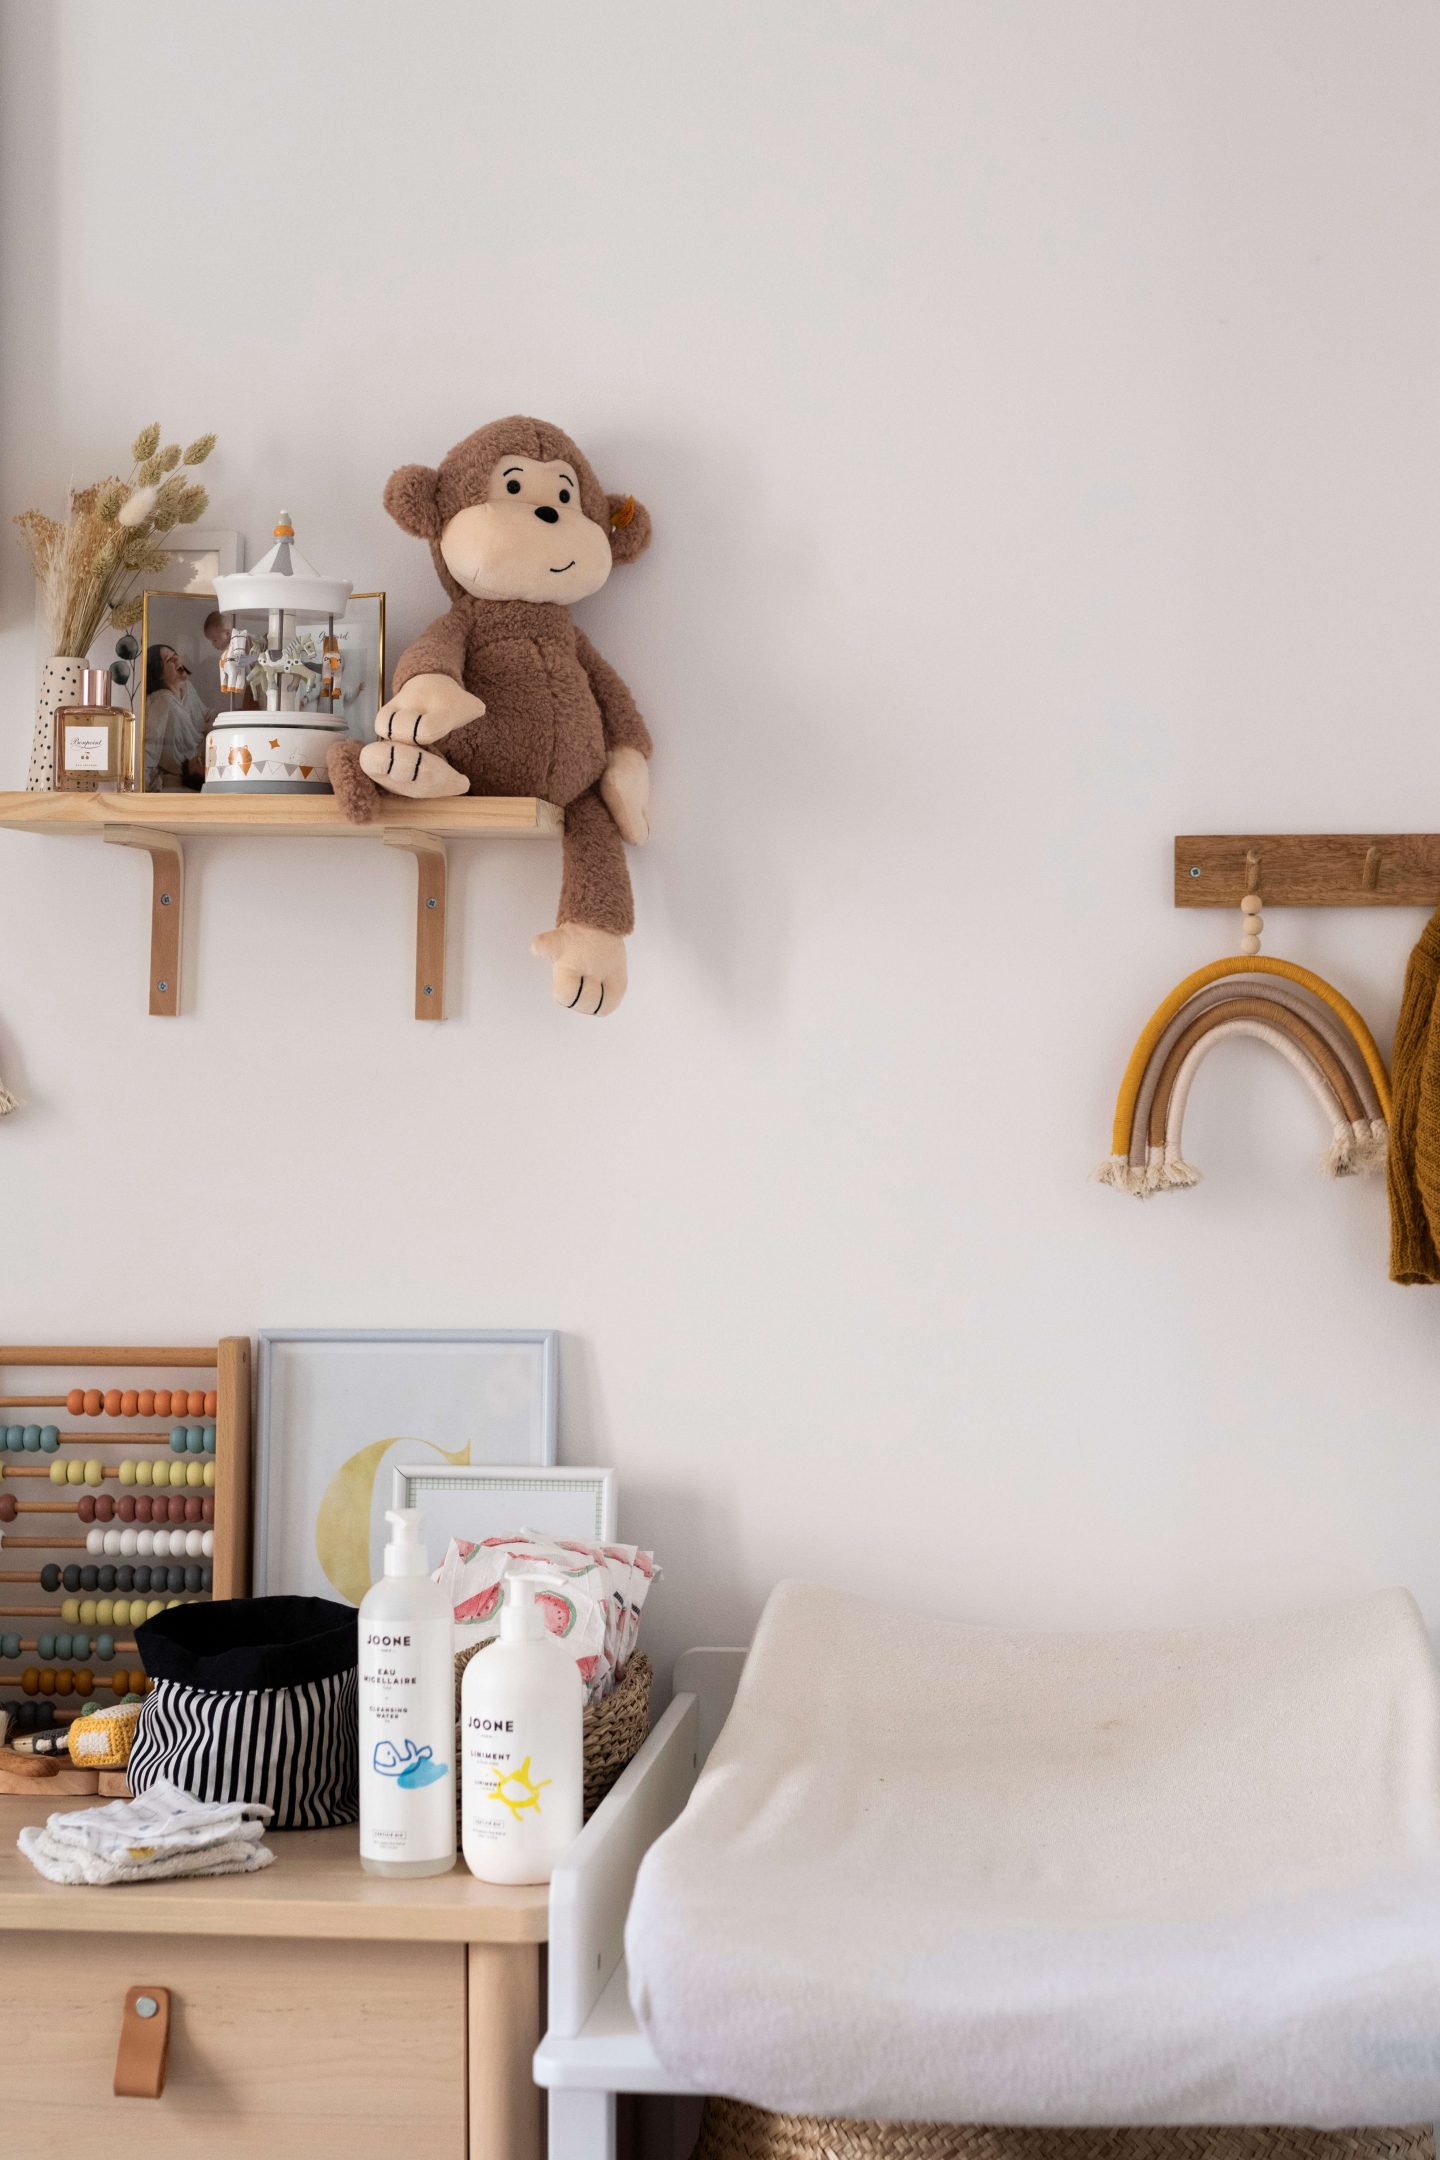 Article décoration chambre enfant bébé blog latelierdal blog lifestyle mode